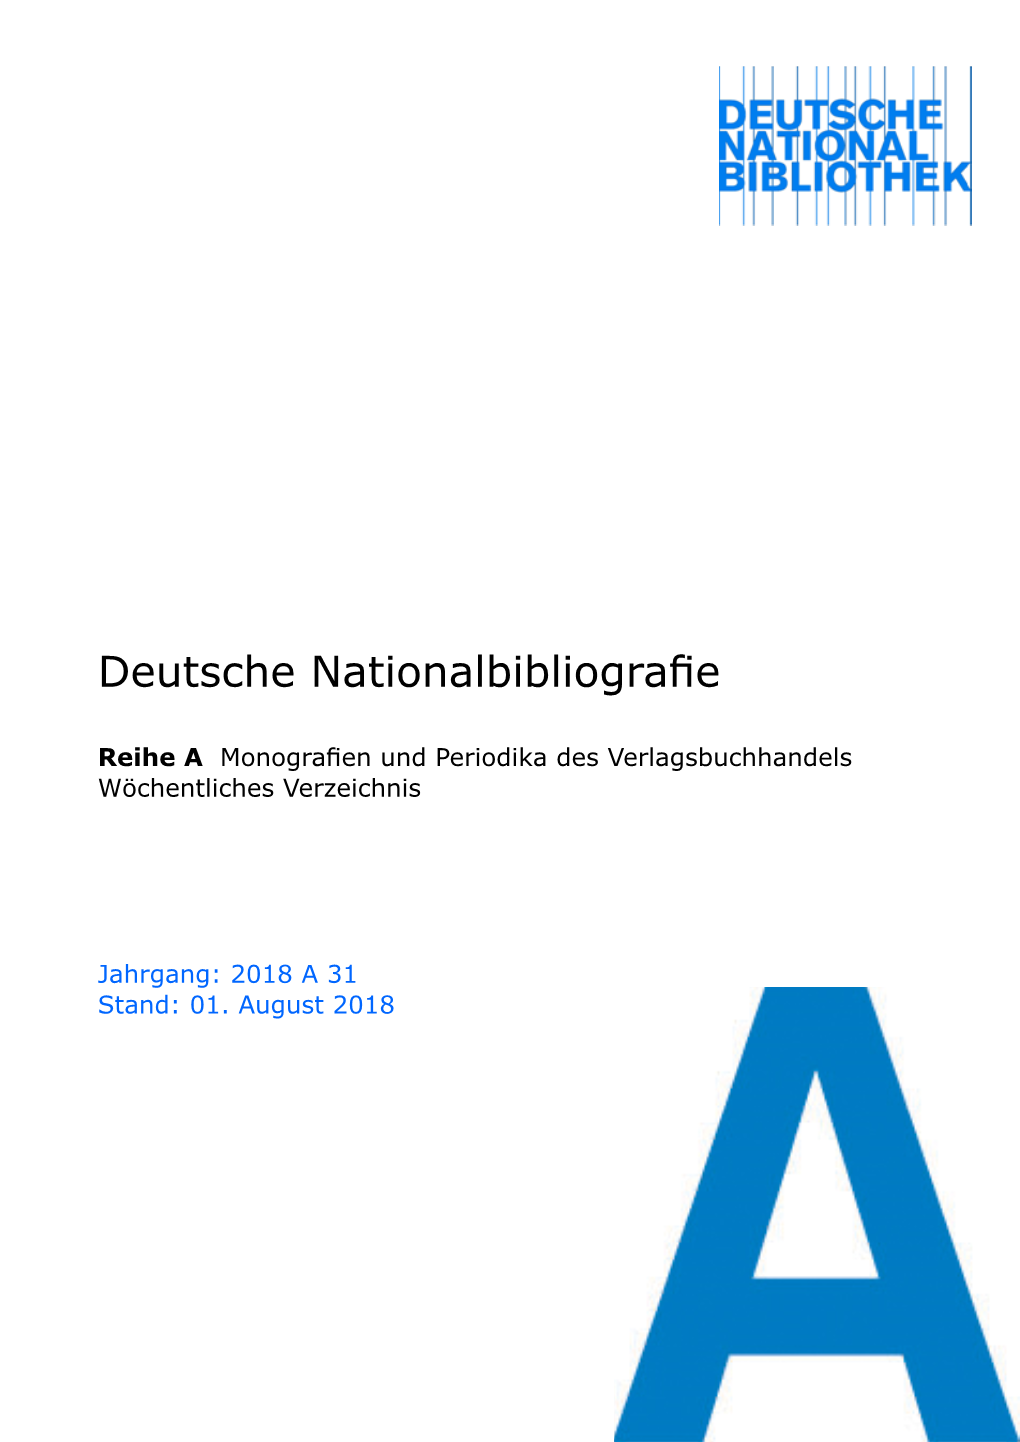 Deutsche Nationalbibliografie 2018 a 31